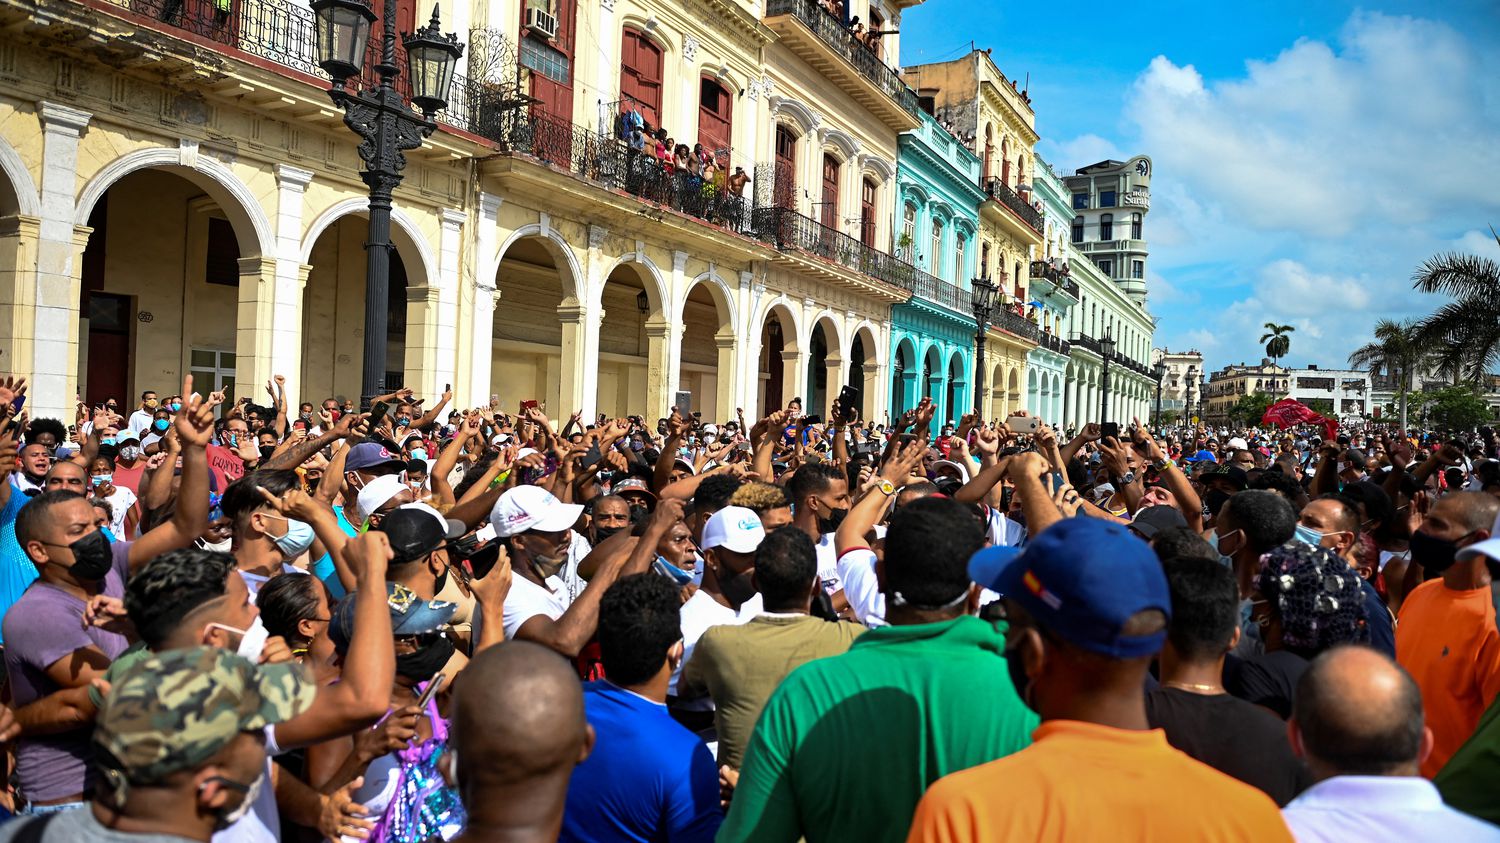 Manifestations à Cuba : "Les gens manquent de tout, la situation économique et sociale est absolument horrible", estime une spécialiste